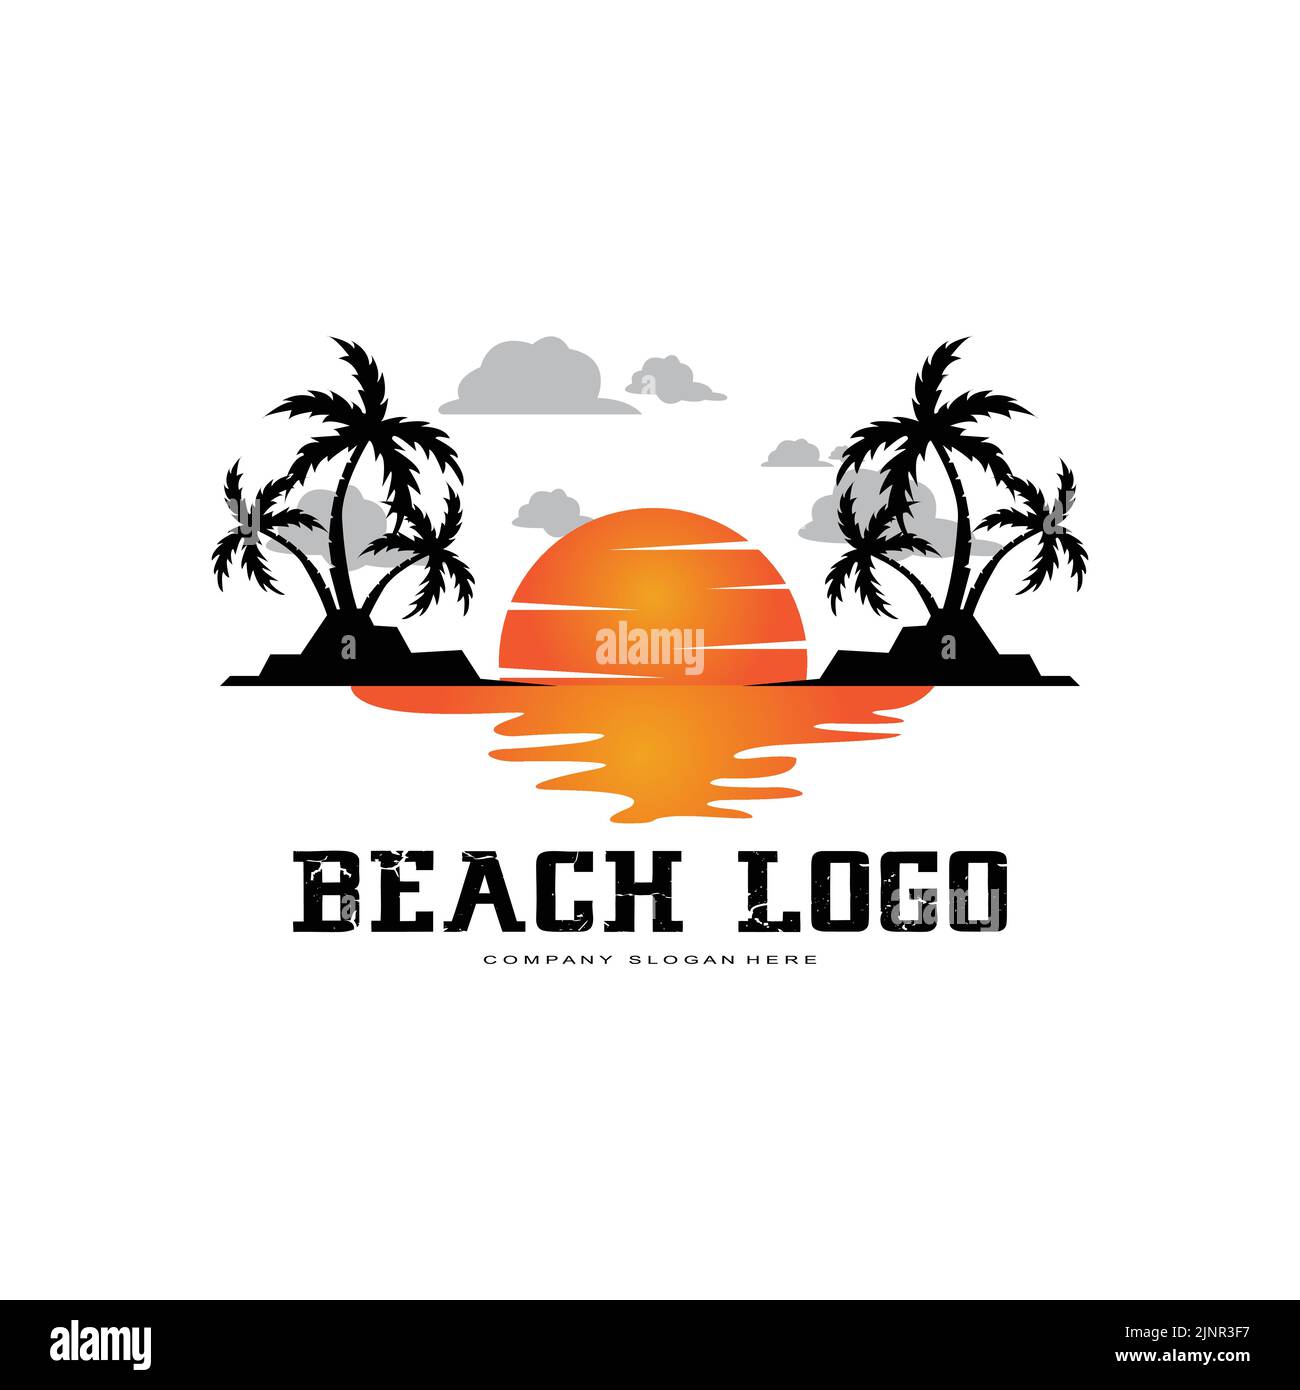 vector Beach Logo Vorlage mit Sonnenuntergang, Kokospalmen, Fischerbooten, Segelbooten und fliegenden Vögeln, ocean Waves, Retro Circle Design Konzept Stock Vektor